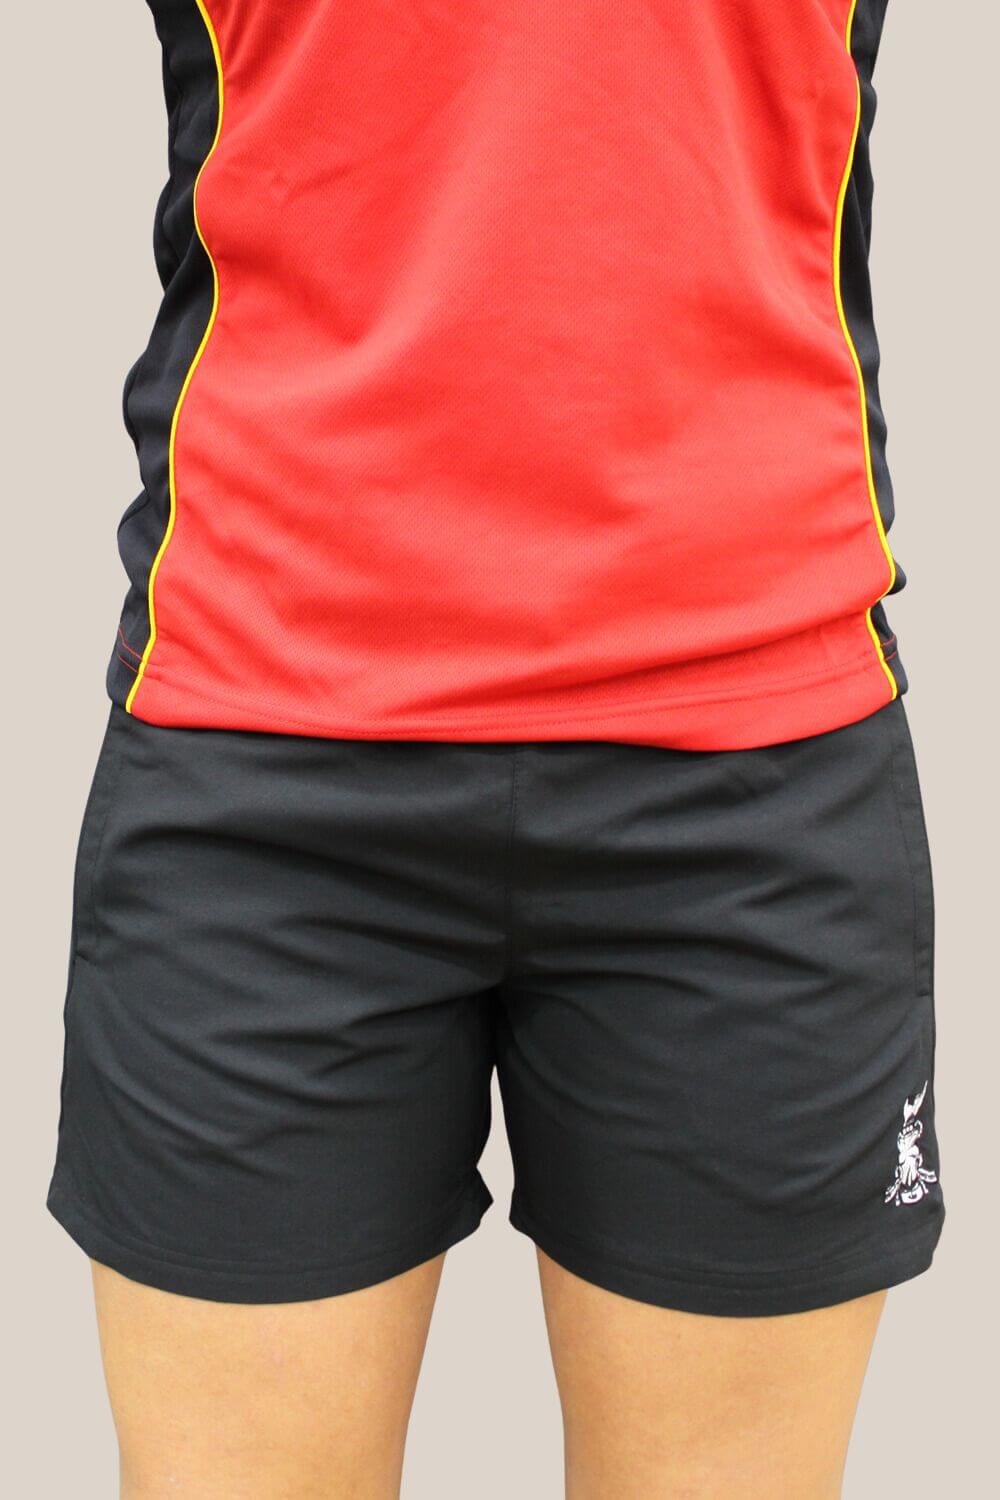 ASSG Unisex Sport Shorts